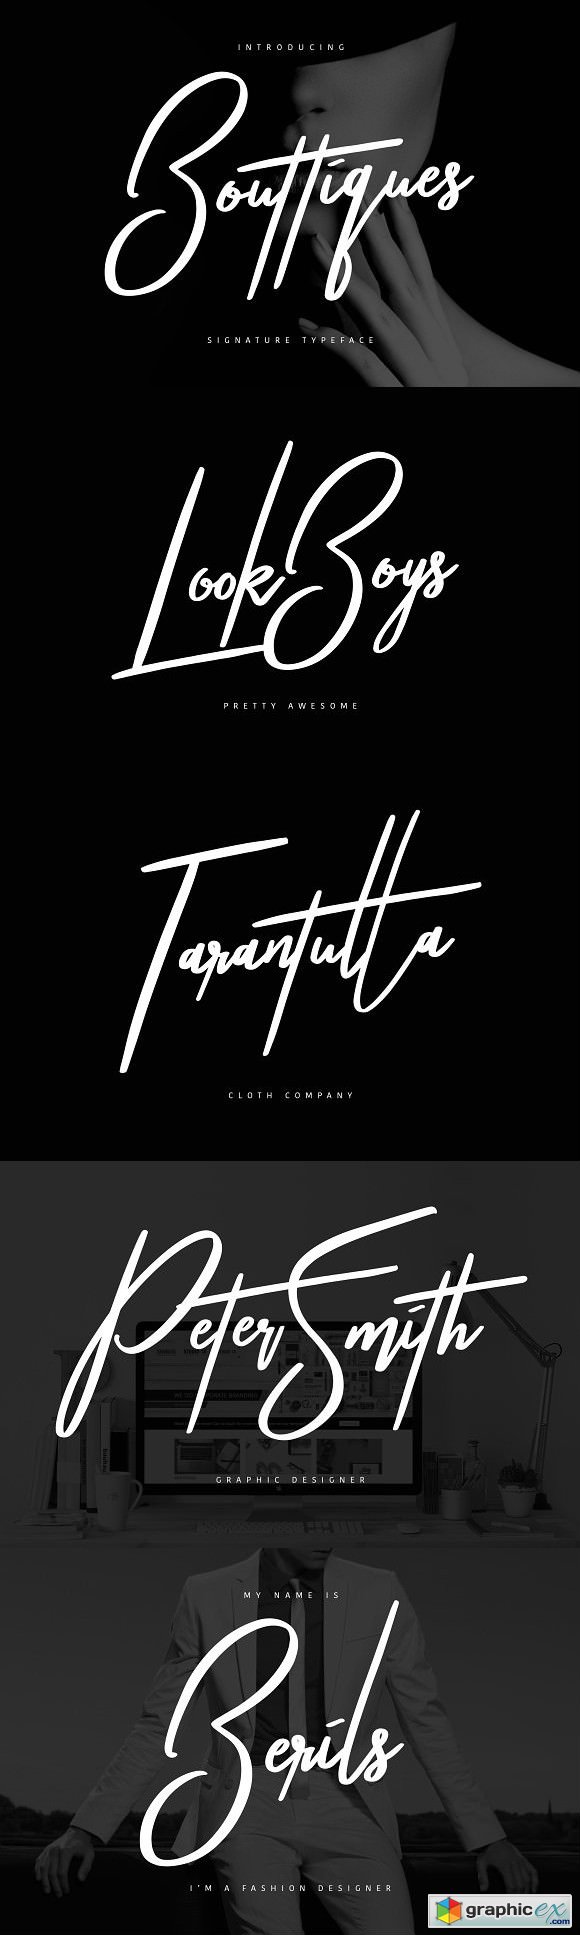 Bouttiques Typeface